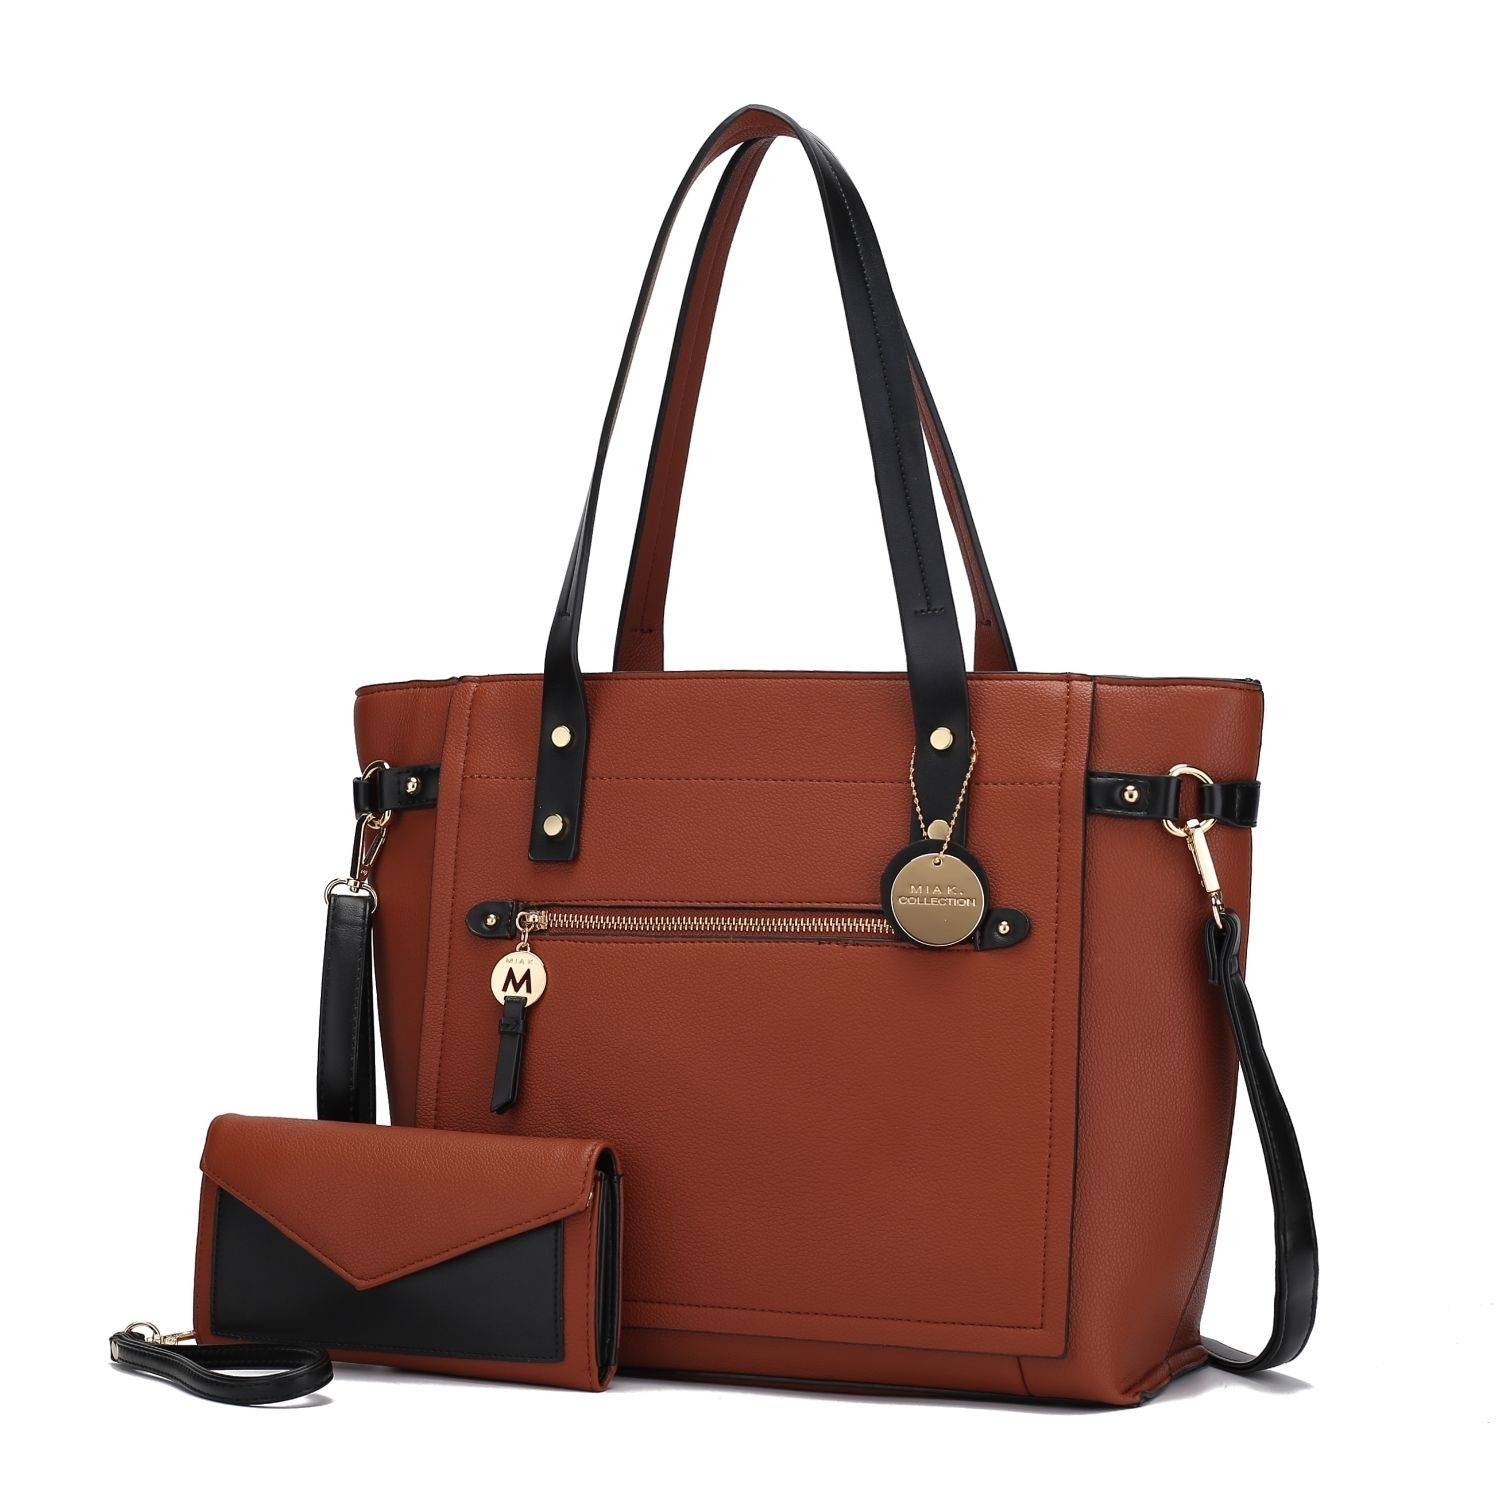 MKF Collection Andrys Tote Handbag By Mia K. - Cognac Black